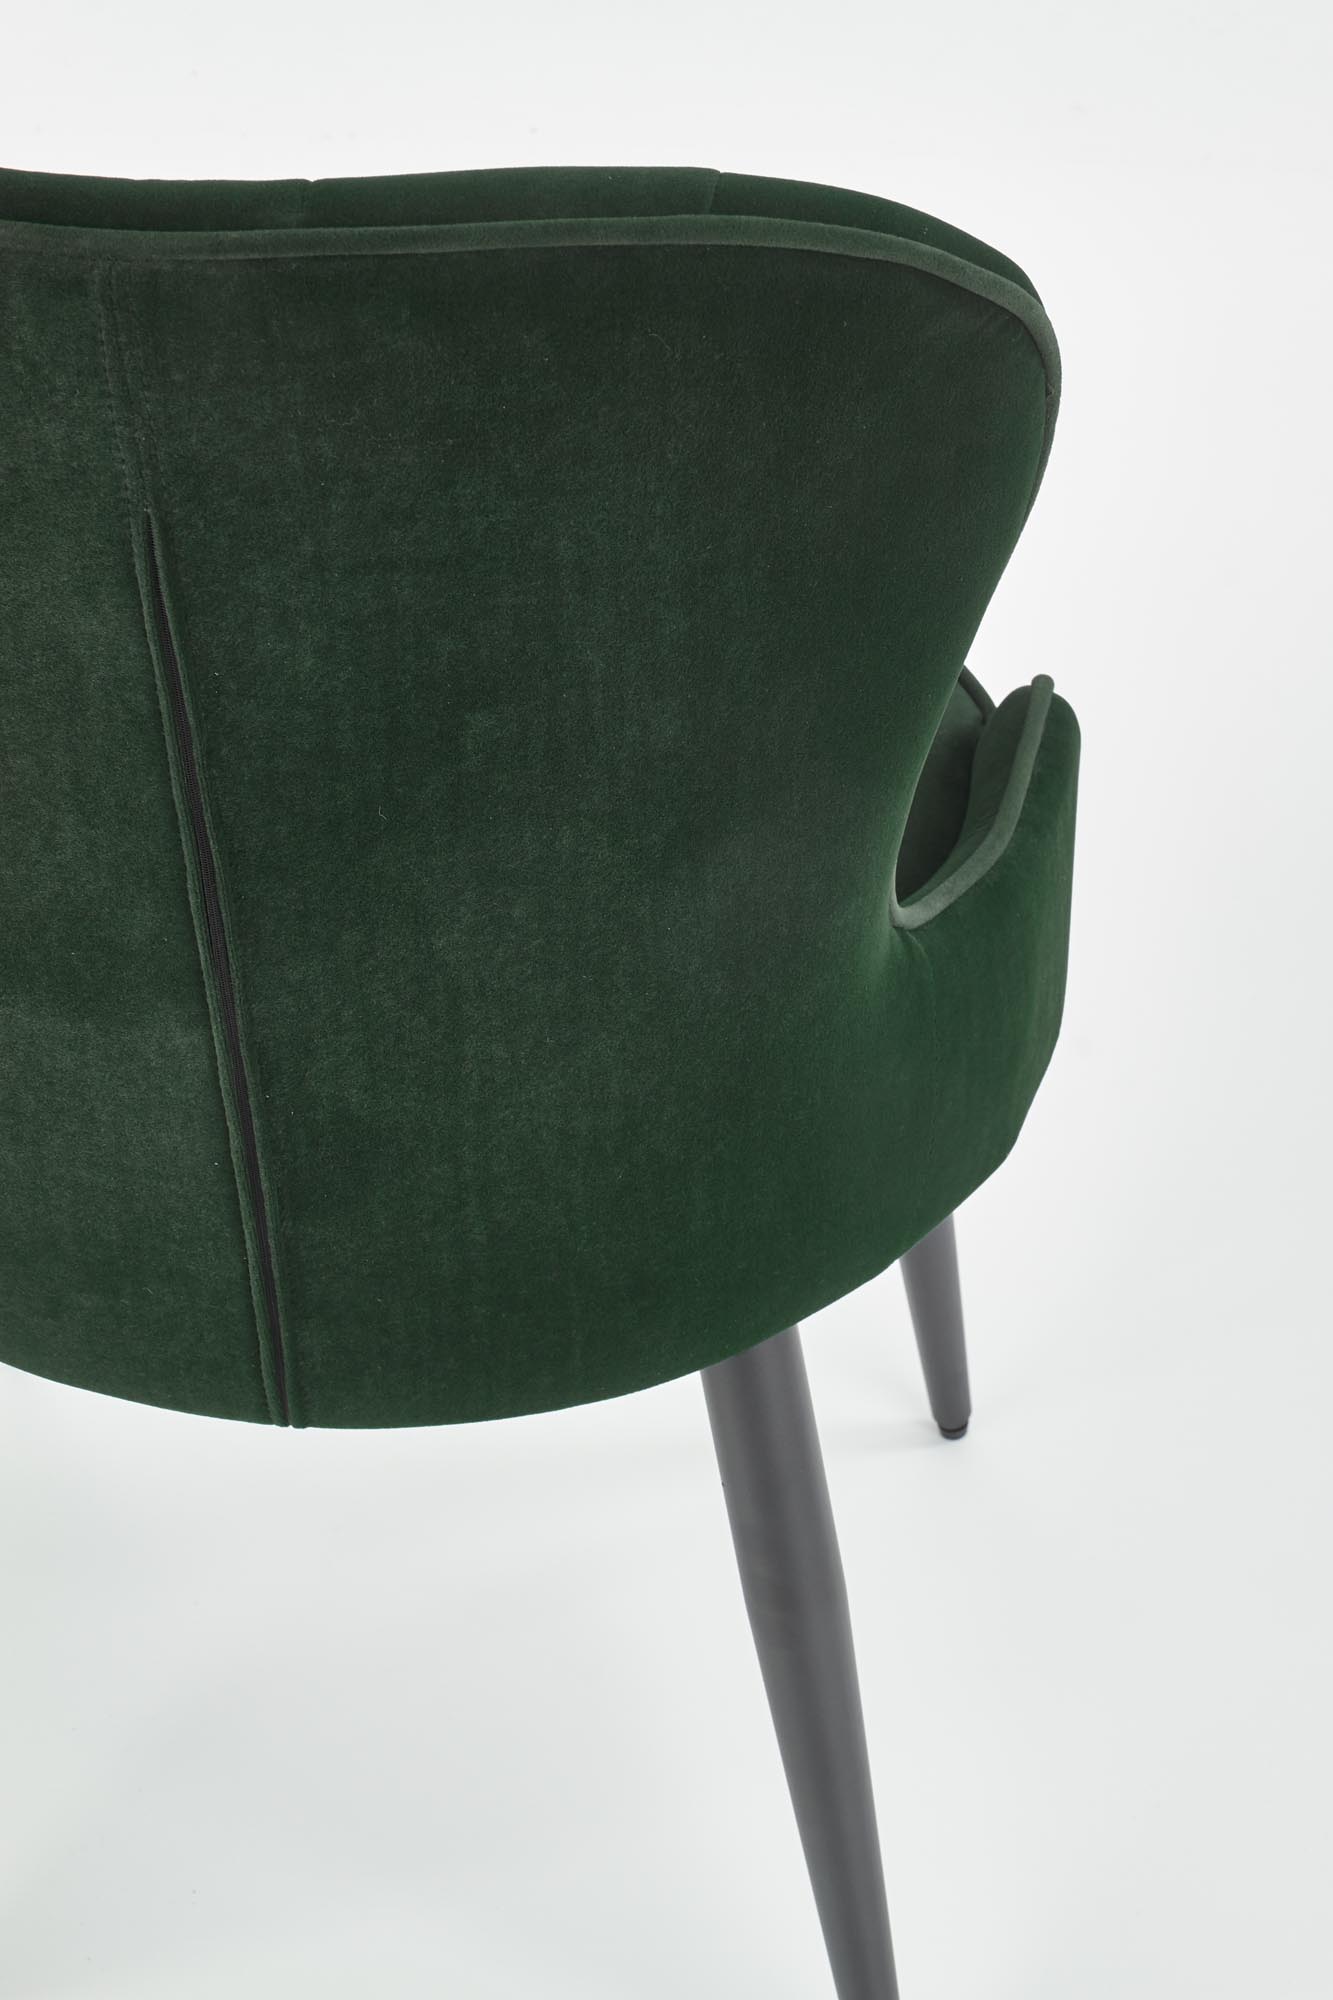 Stolička K366 - tmavý Zelený Stolička k366 - tmavý Zelený